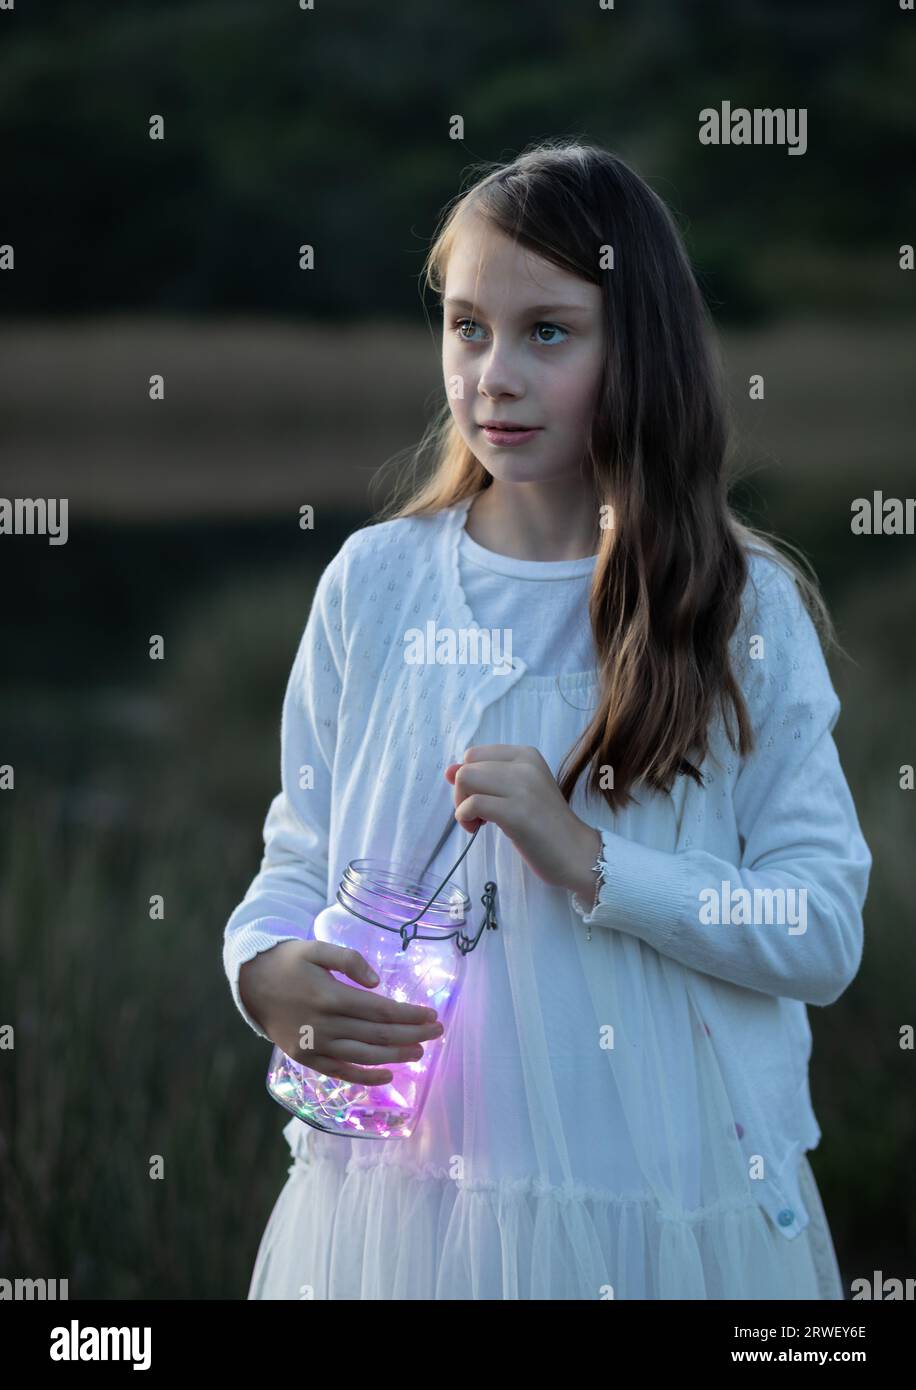 Nahaufnahme eines jungen Mädchens, das in der Abenddämmerung ein Glasgefäß mit Feenlichtern hält und zur Seite schaut Stockfoto